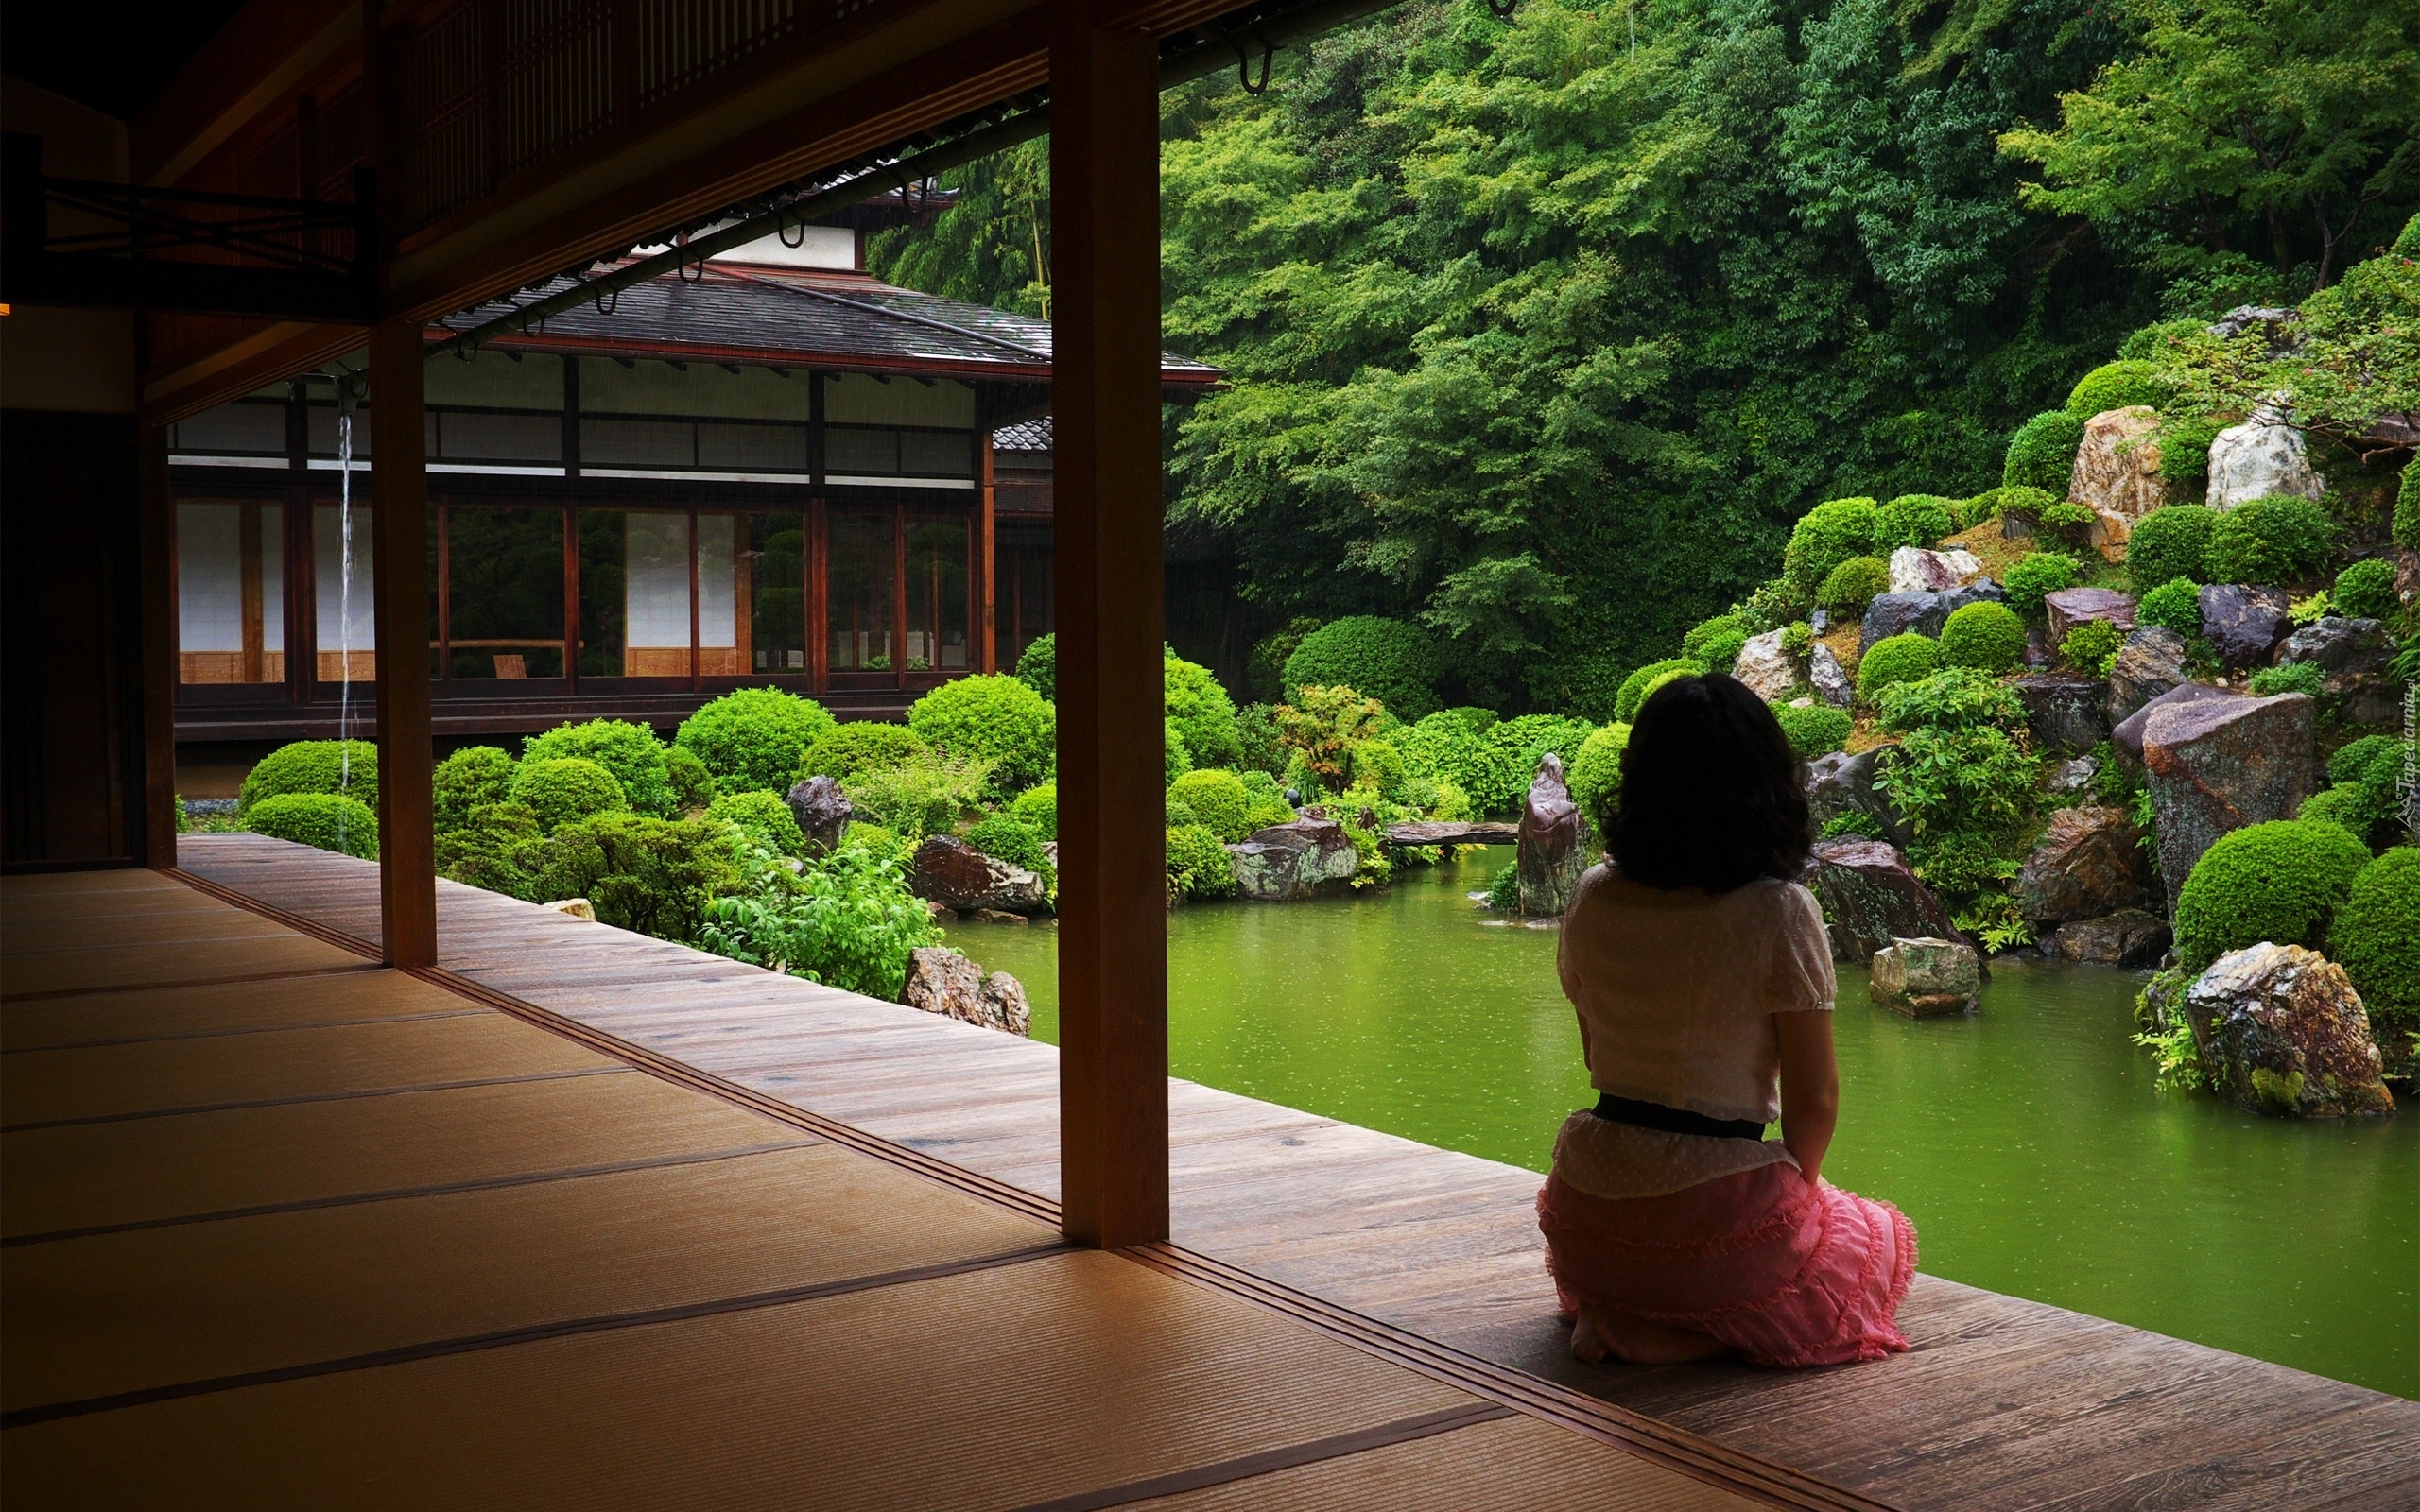 Dom, Ogród, Japonia, Dziewczyna